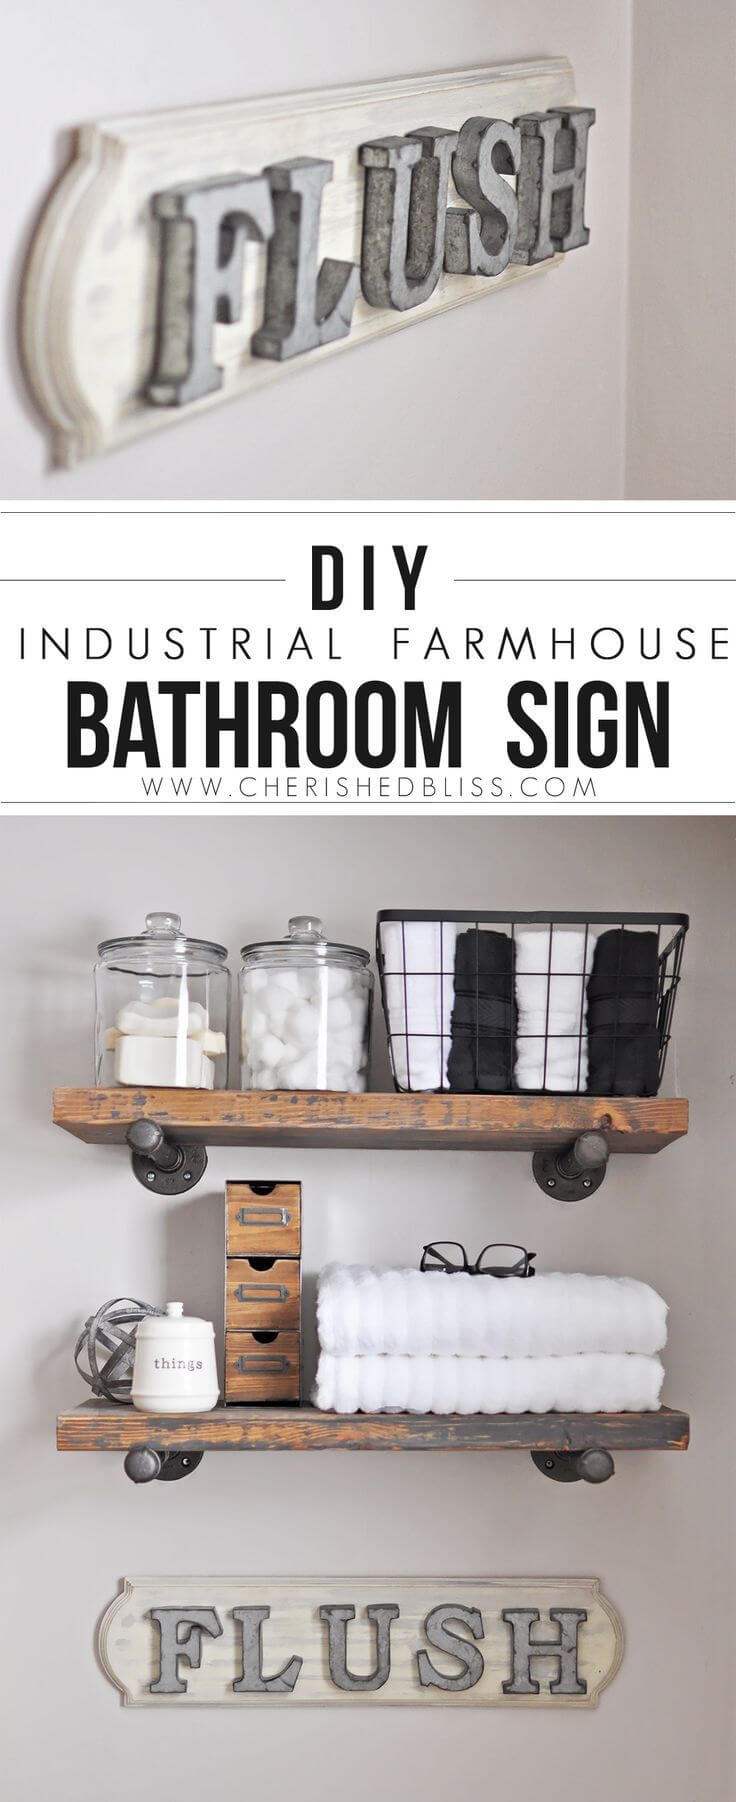 DIY Farmhouse Bathroom “Flush” Sign